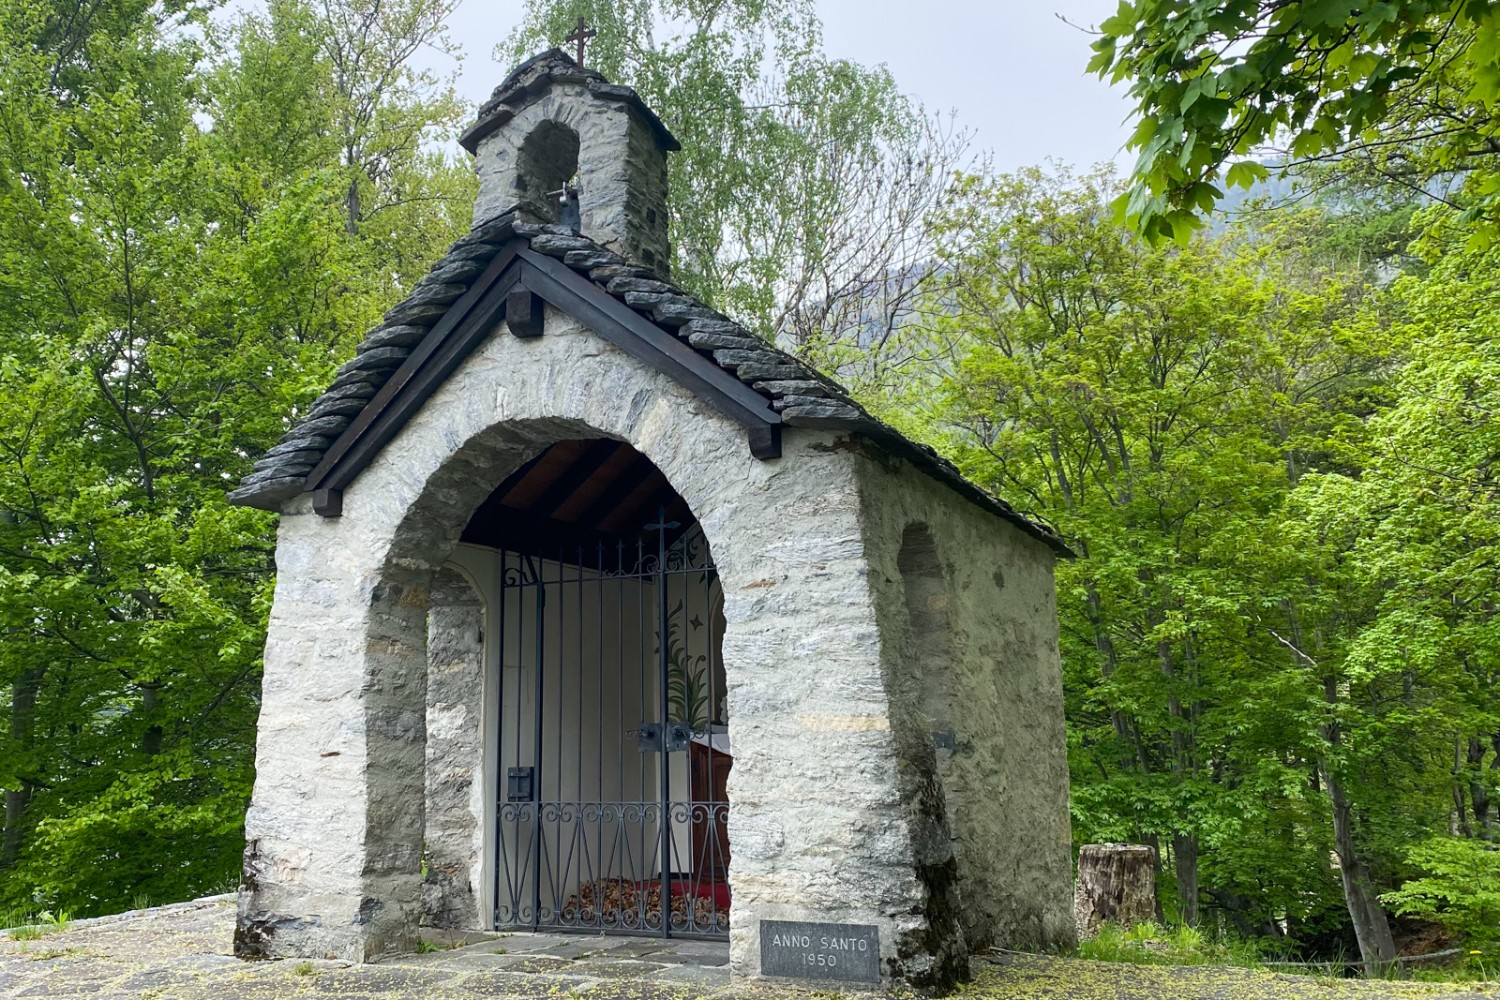 La petite chapelle de Monti di Ravecchia. Photo: Loïc von Matt